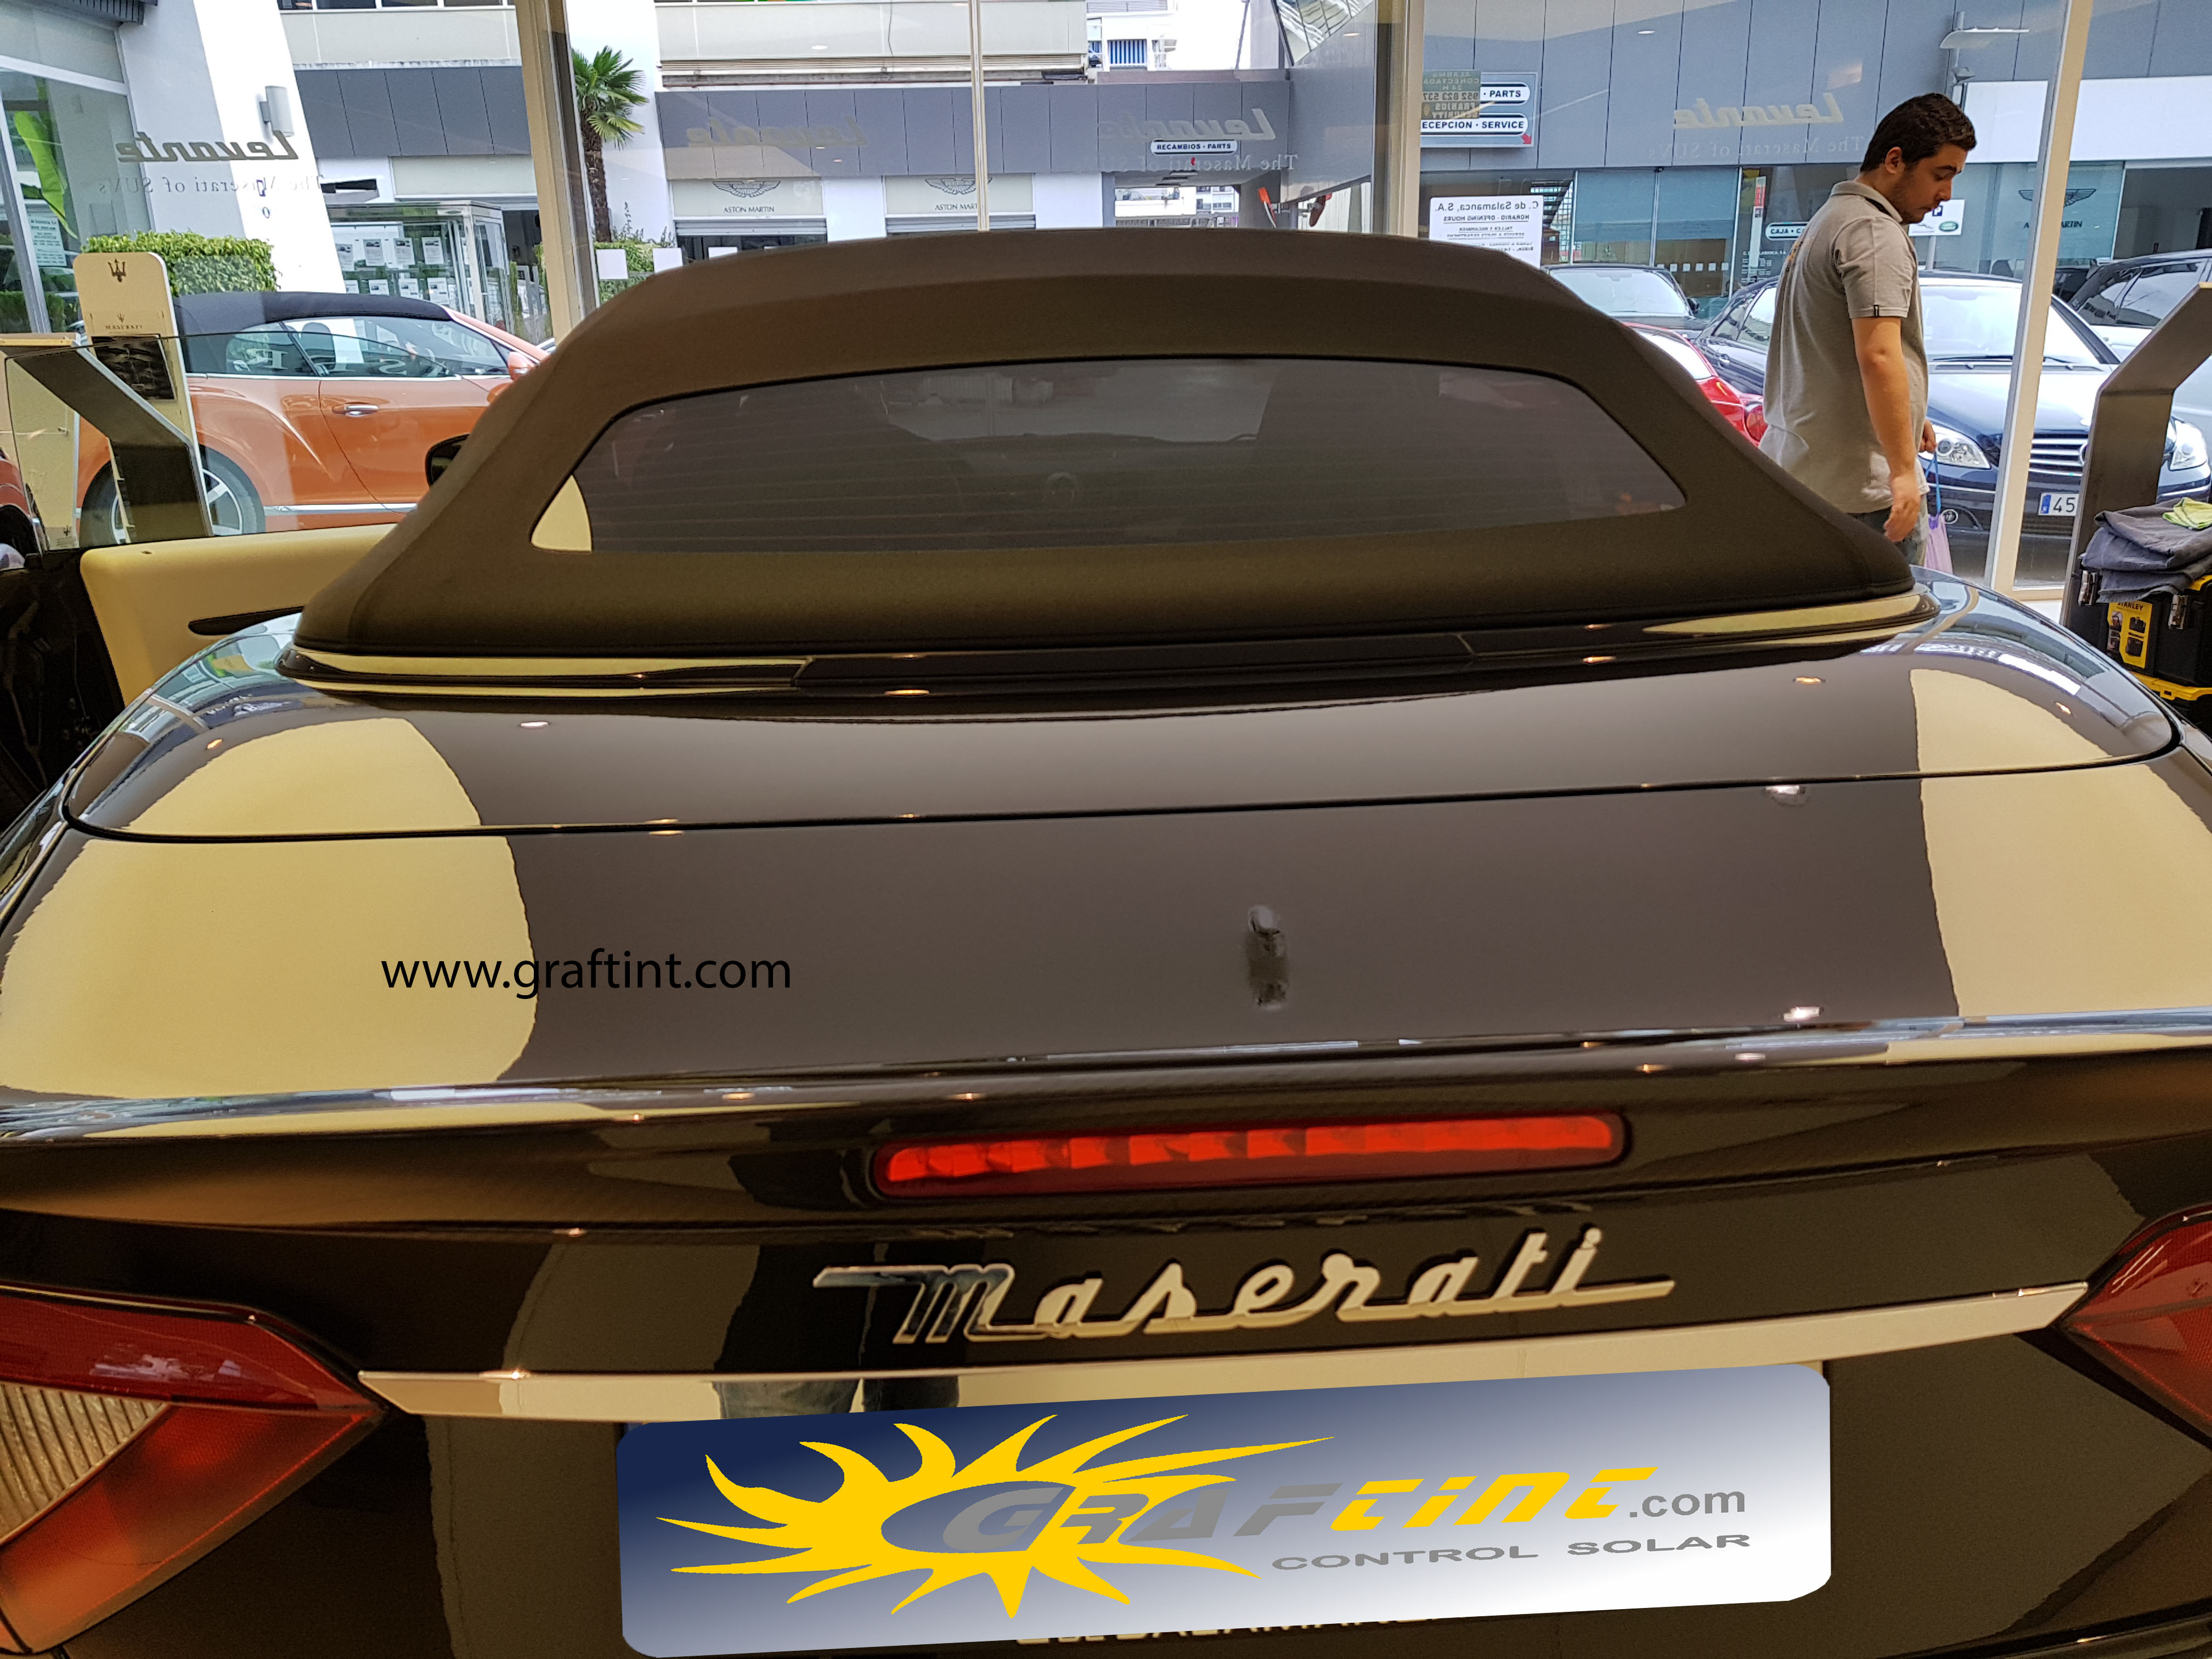 Maserati - Prosol 95% (5)